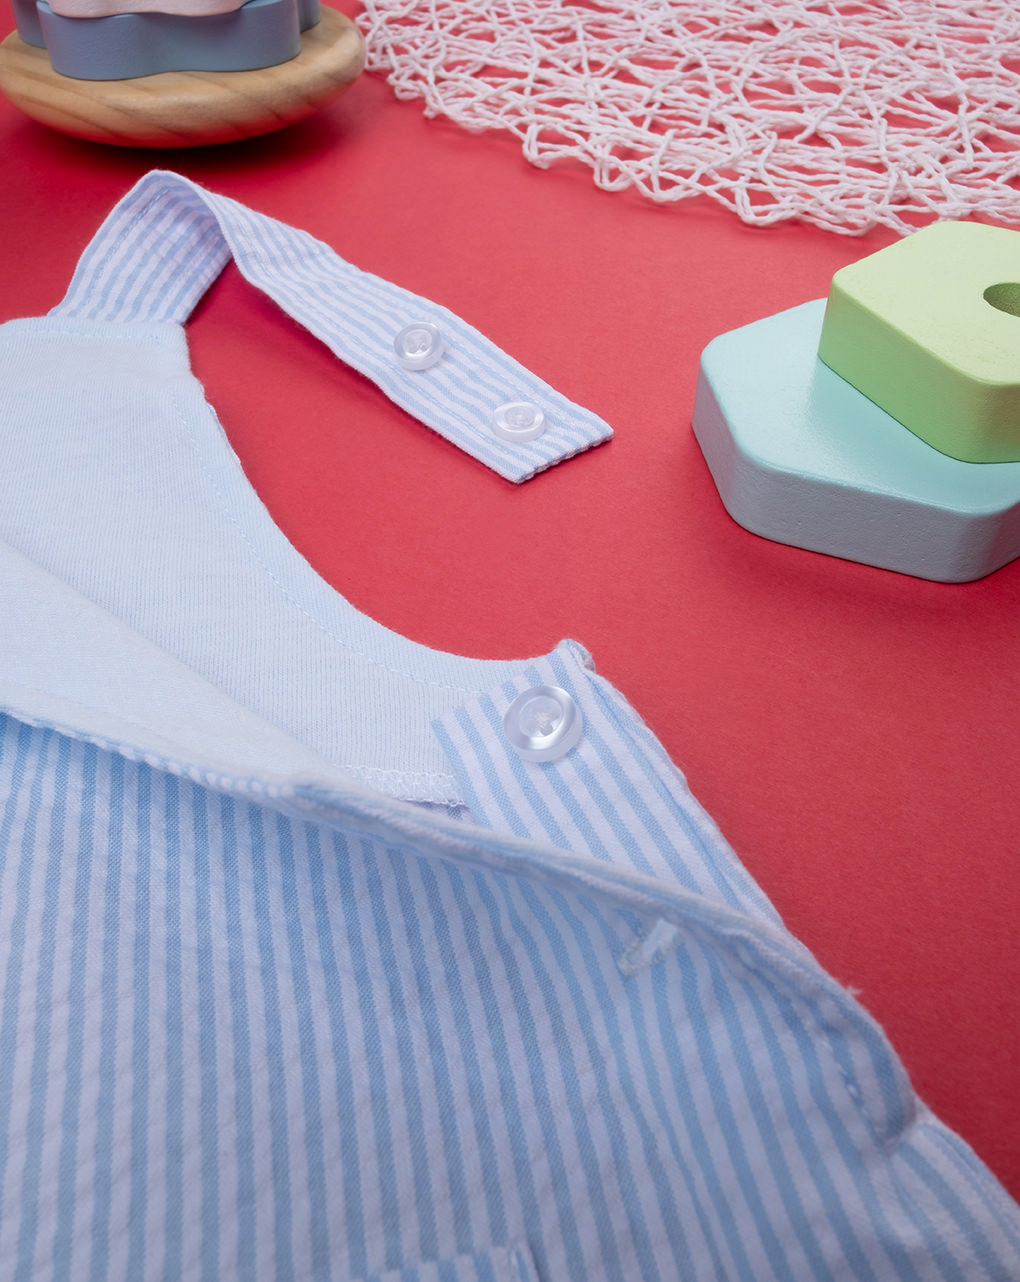 Conjunto de camisola curta para bebé recém-nascido + macacão - Prénatal